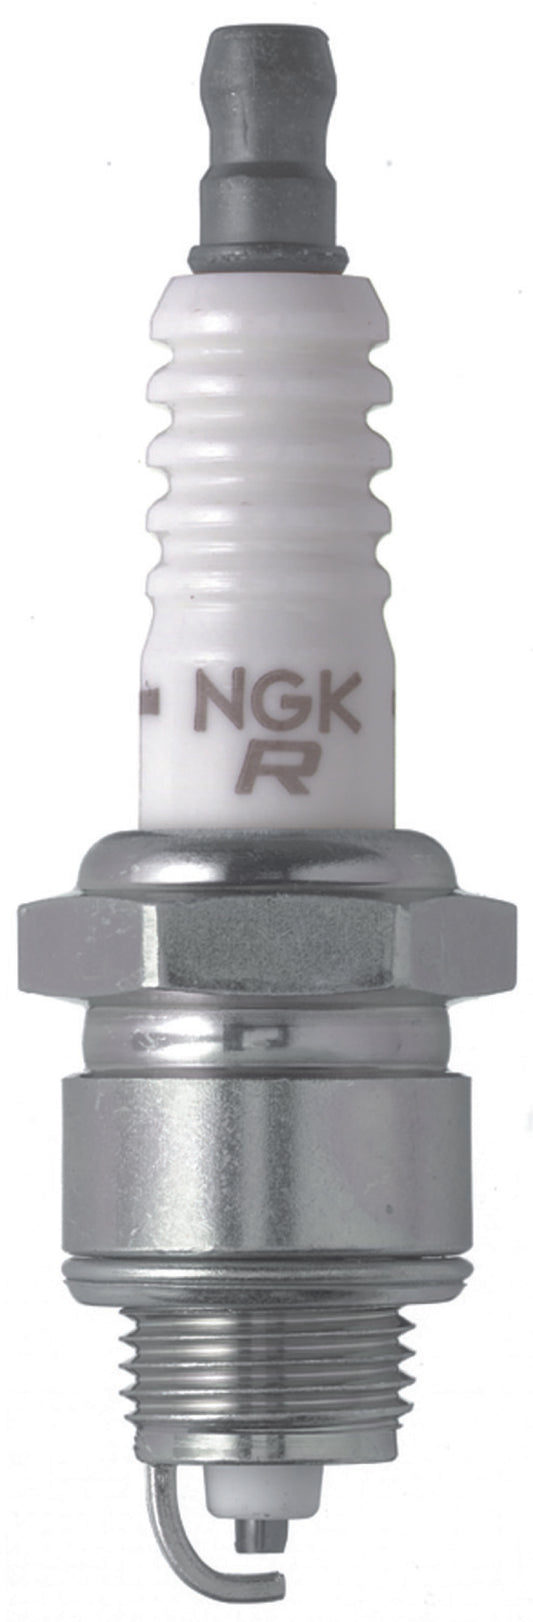 NGK V-Power Spark Plug Box of 4 (XR45)